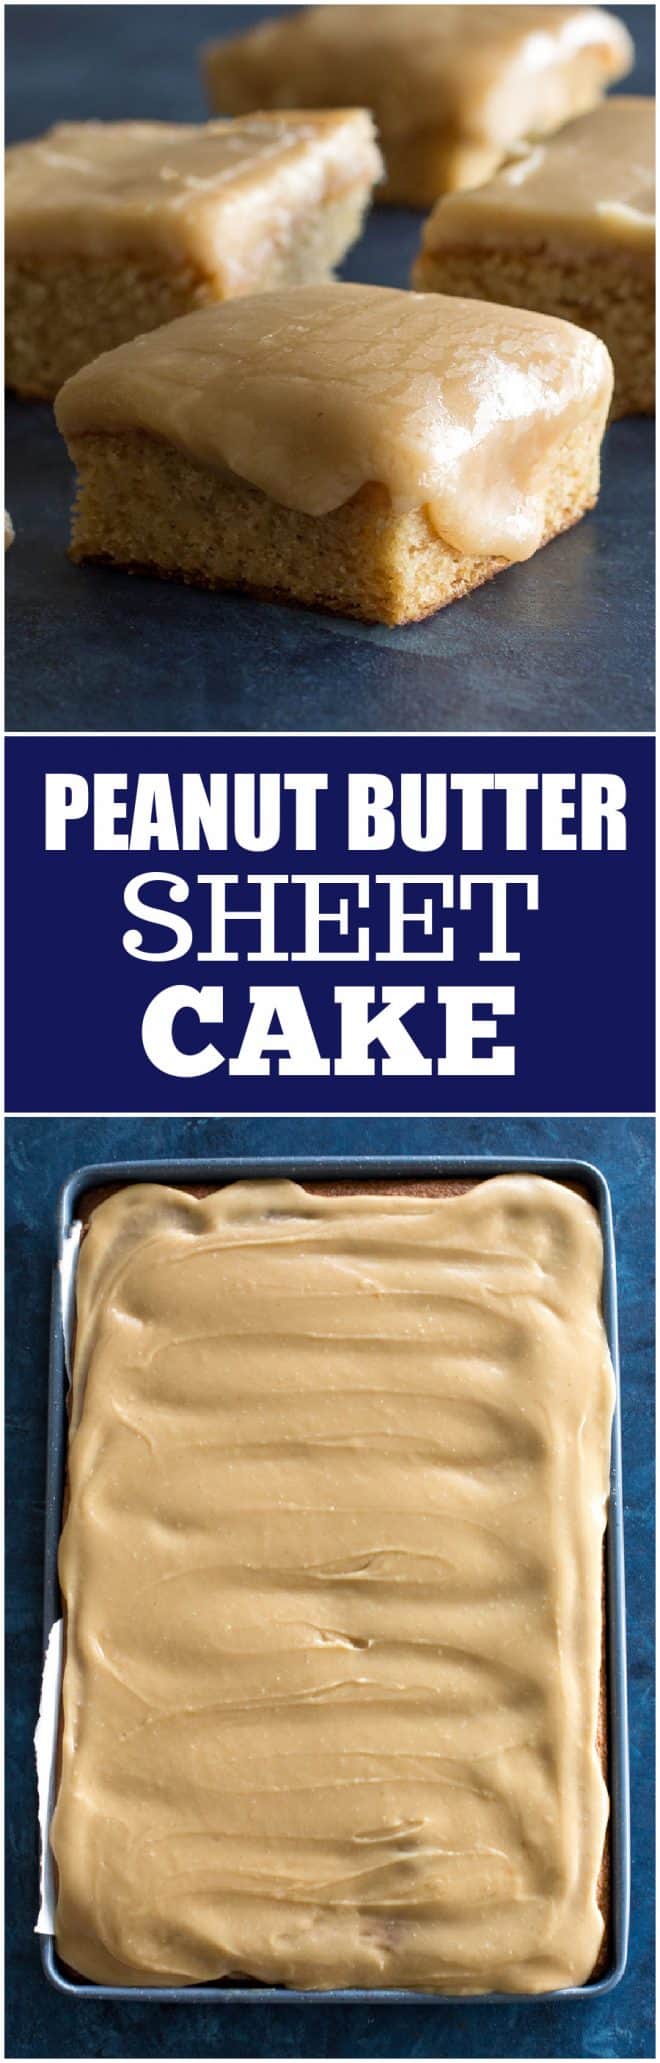 Peanut butter sheet cake